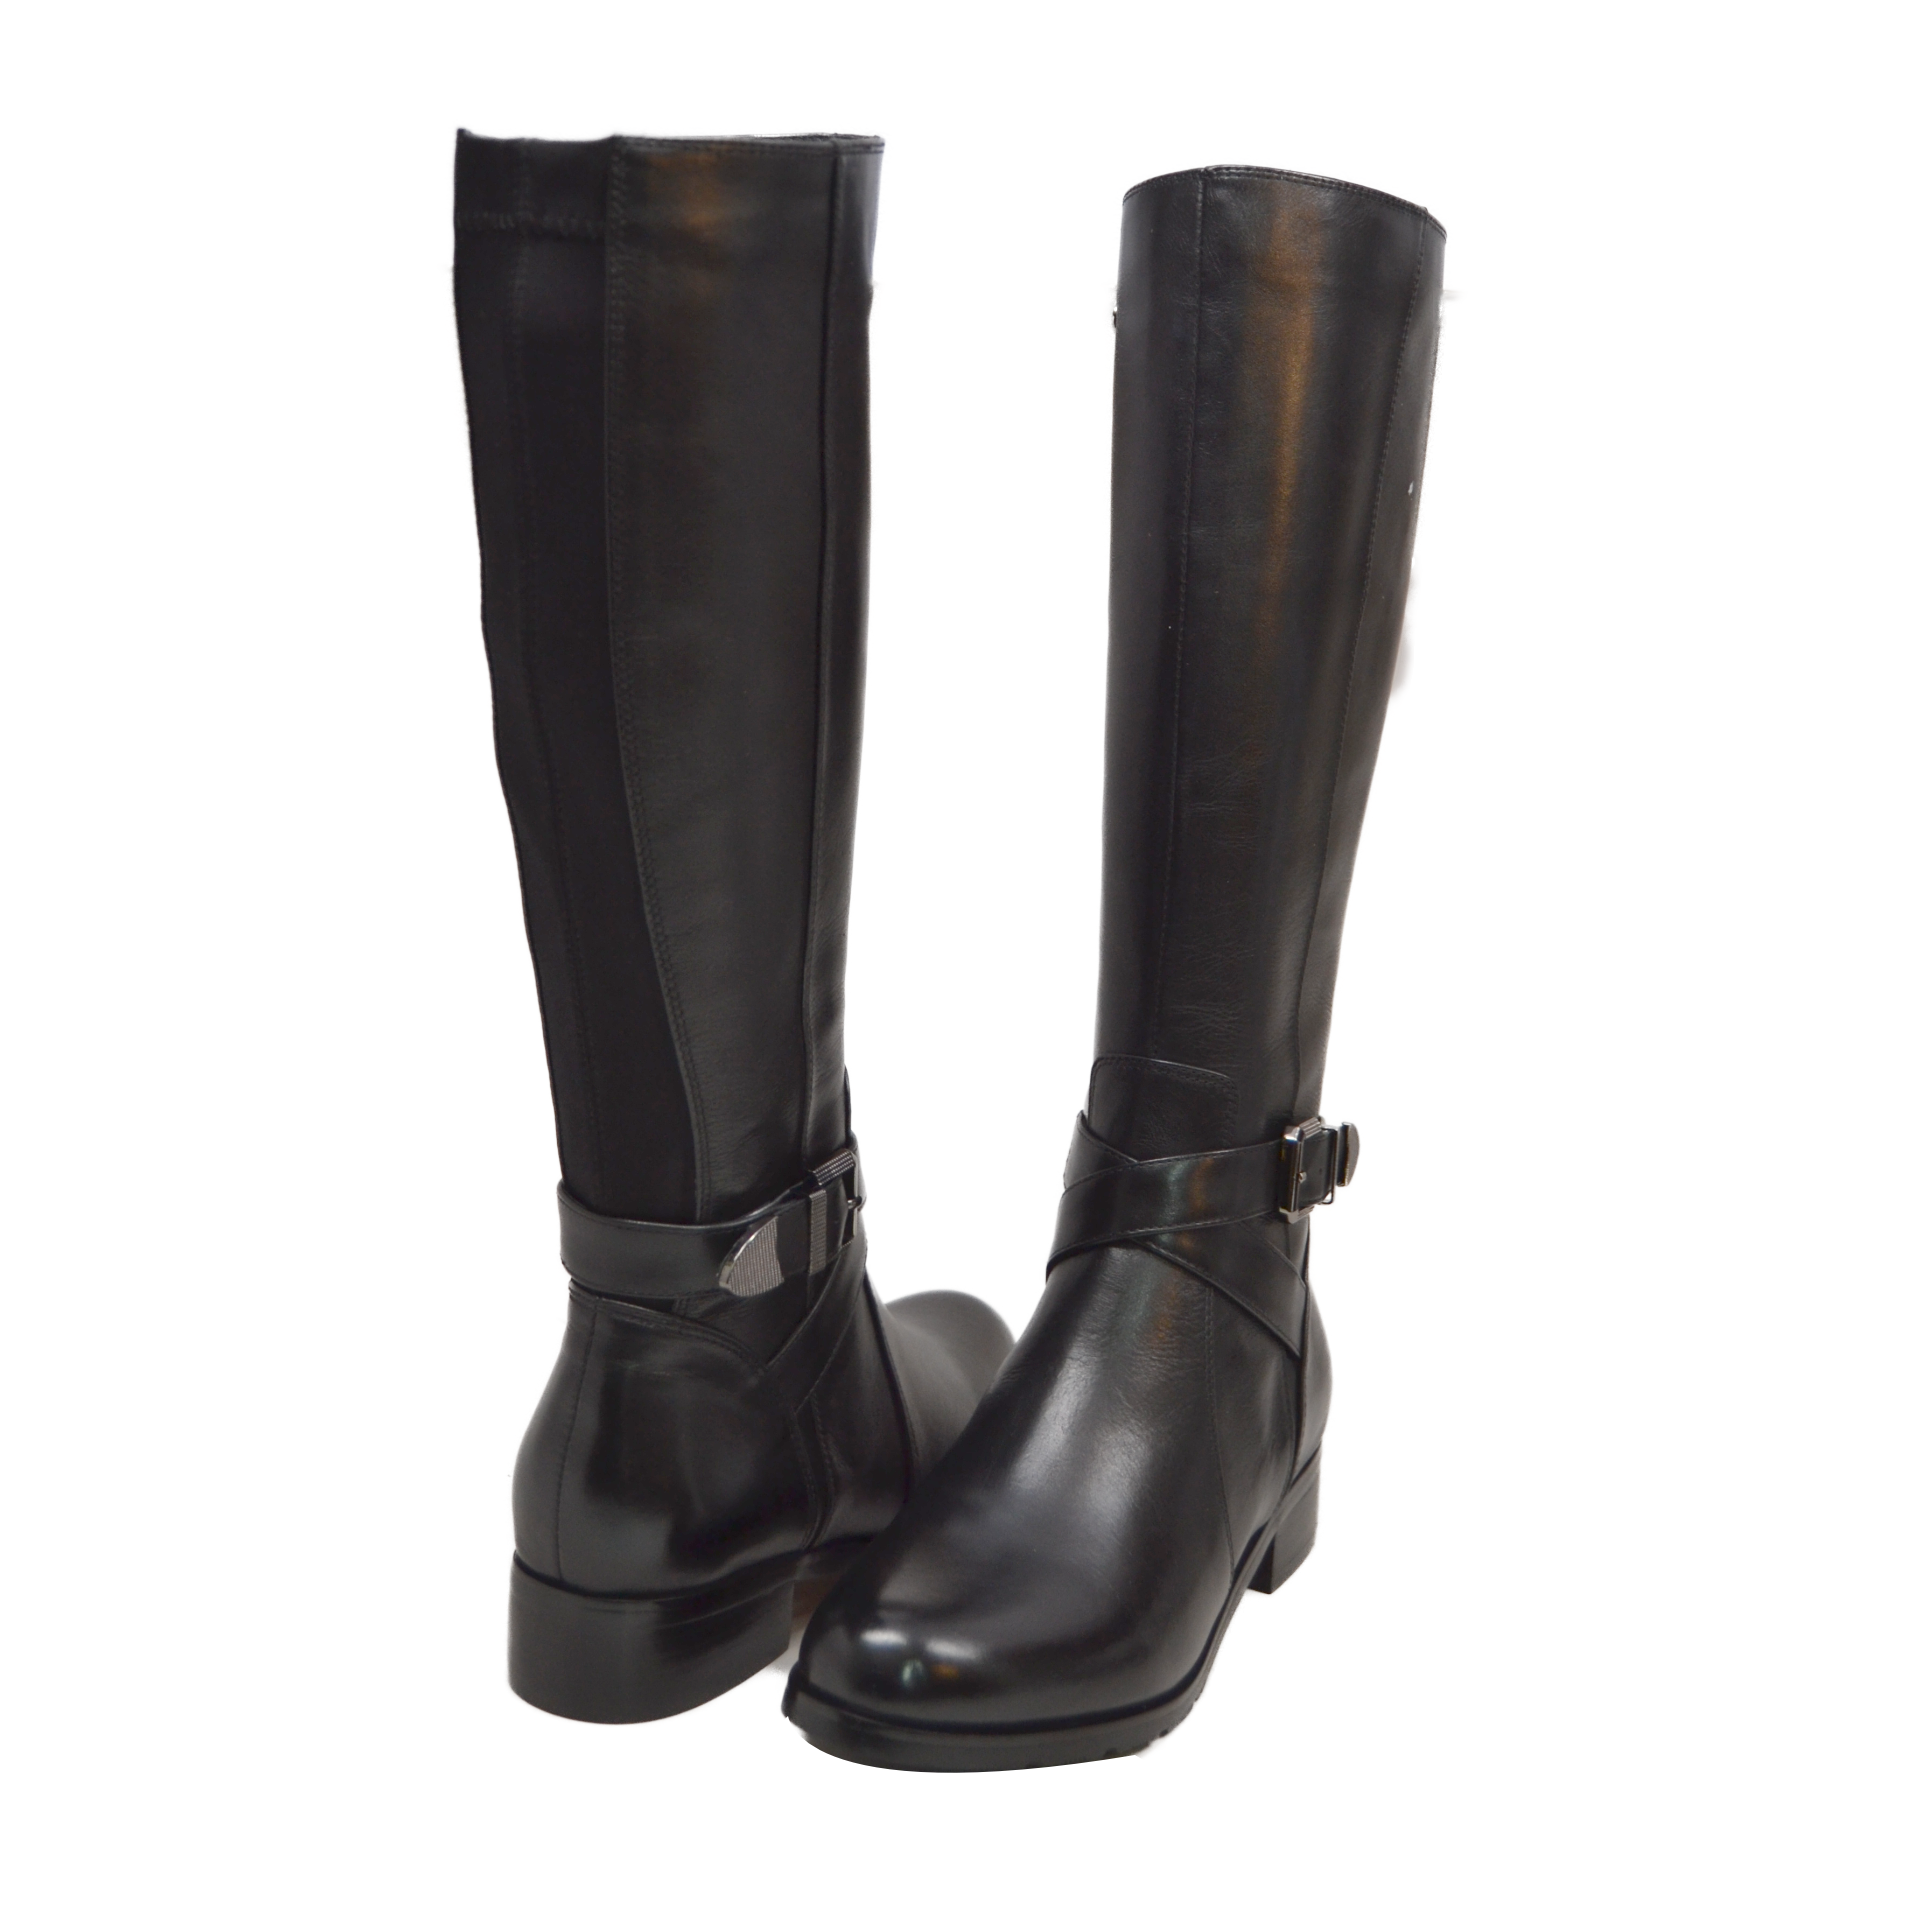 SoleiMani Barcelona Narrow Calf Dress & Casual Heel Boots – Slim Calf Boots